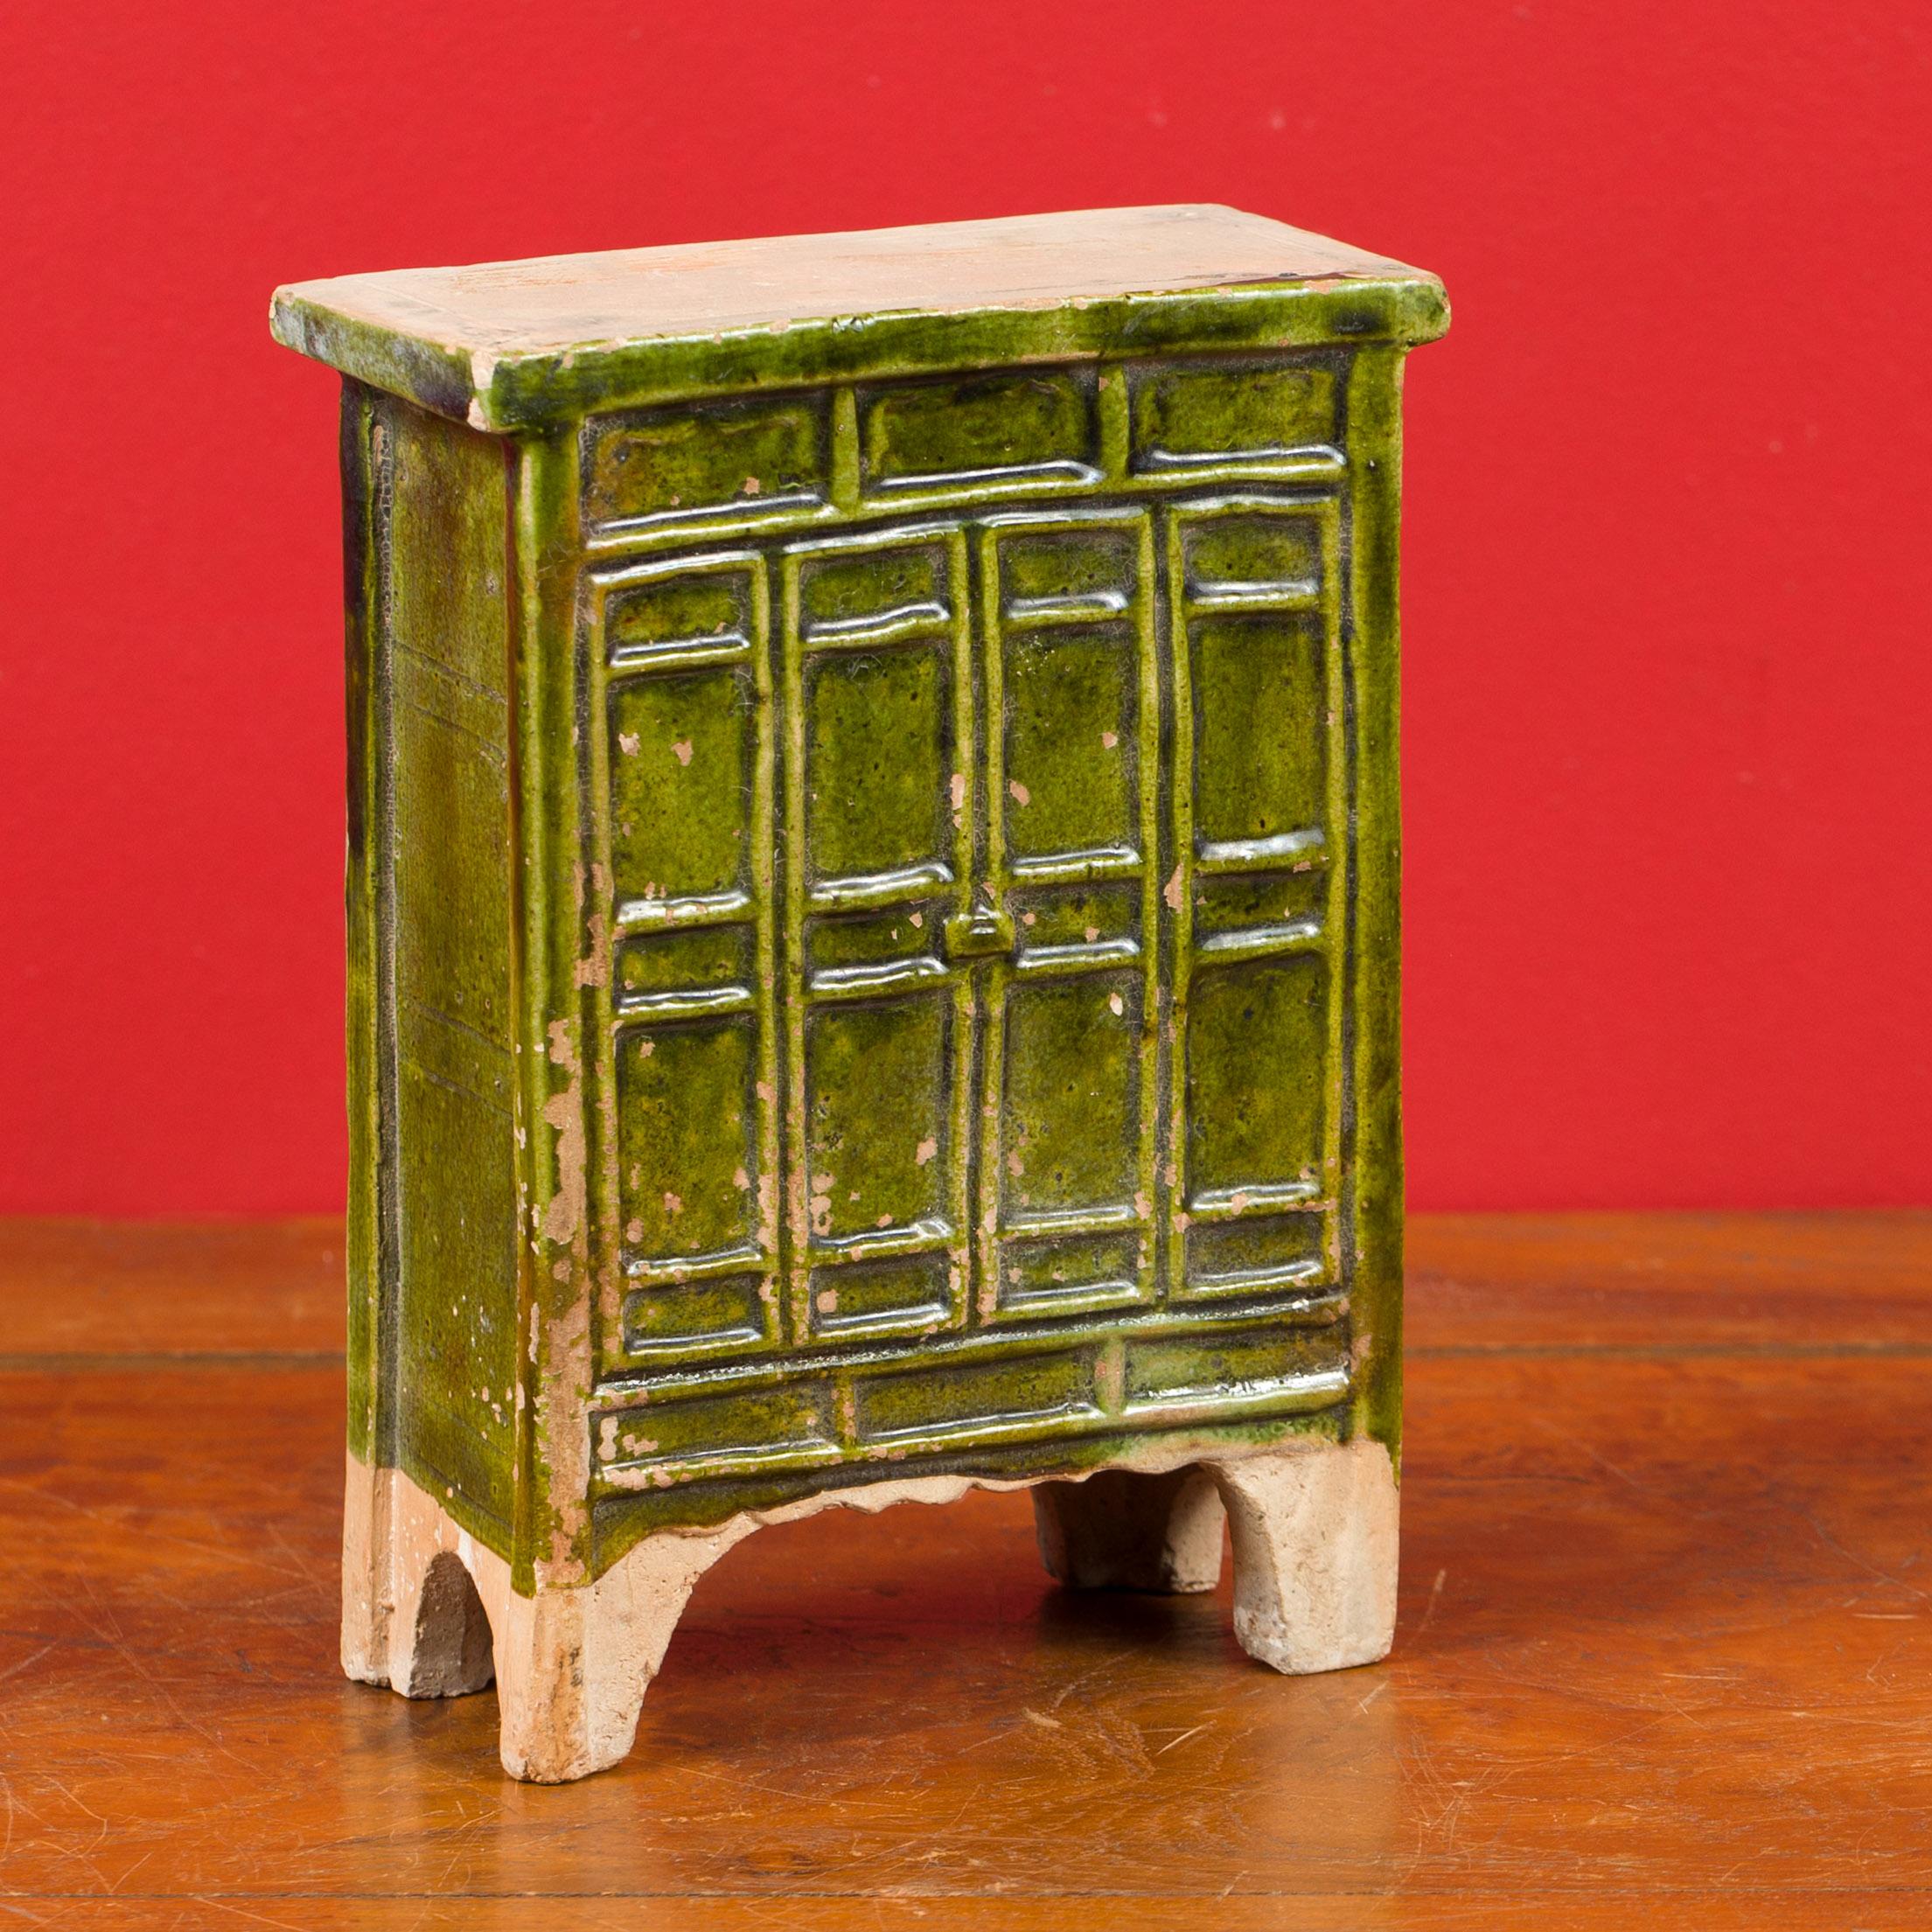 Armoire miniature en terre cuite de l'époque de la dynastie chinoise Ming, avec une finition émaillée verte et des pieds en forme d'équerre. Créée en Chine sous la dynastie Ming (1368 - 1644), cette armoire miniature en terre cuite présente une